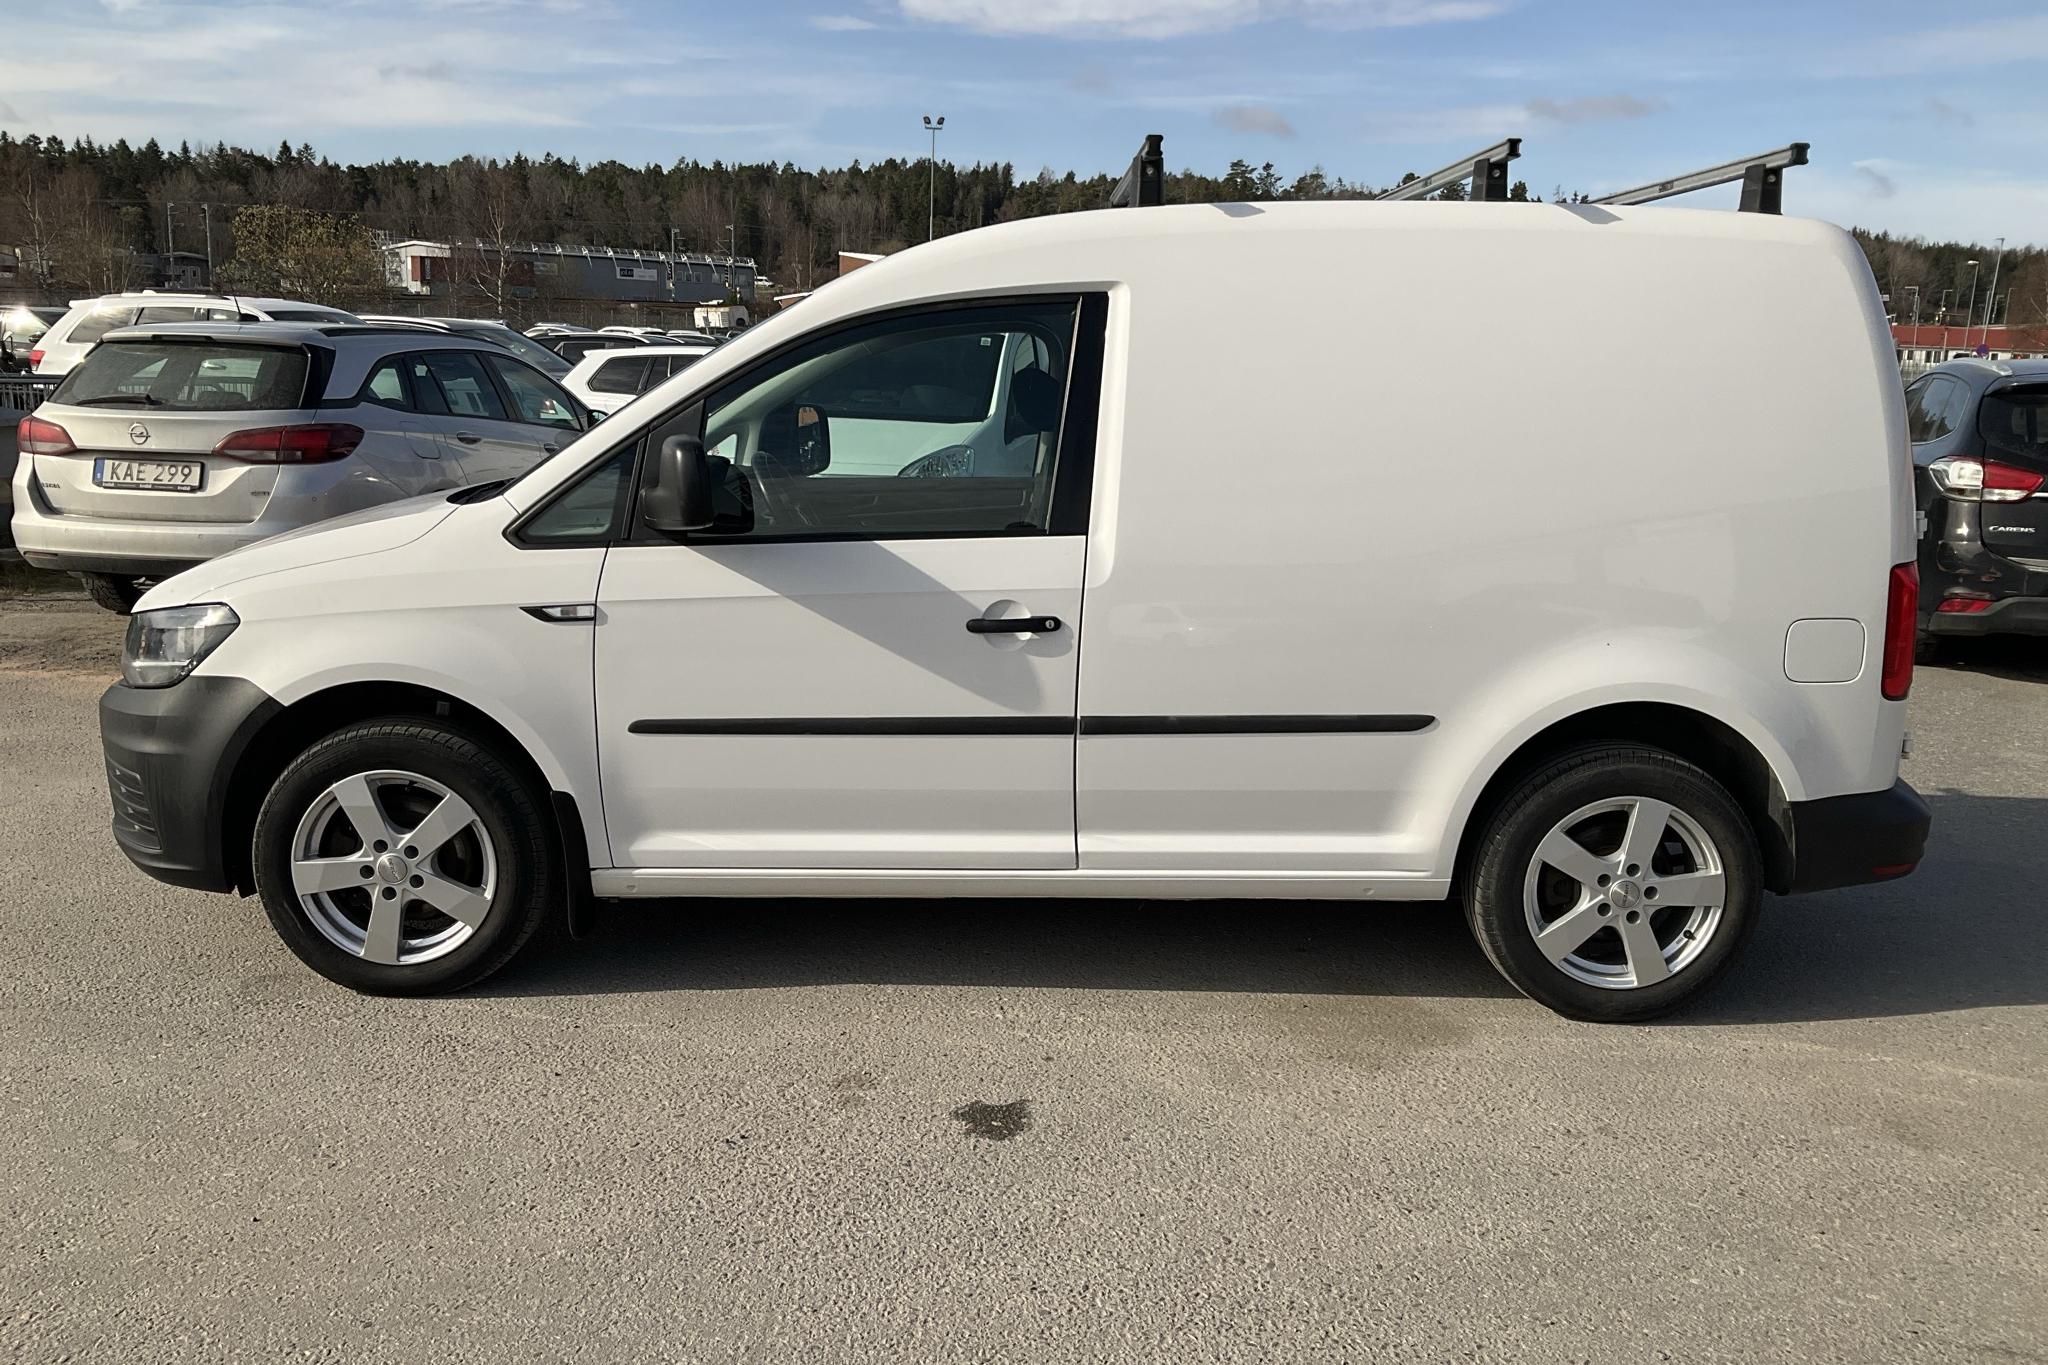 VW Caddy 2.0 TDI (75hk) - 113 800 km - Manual - white - 2018